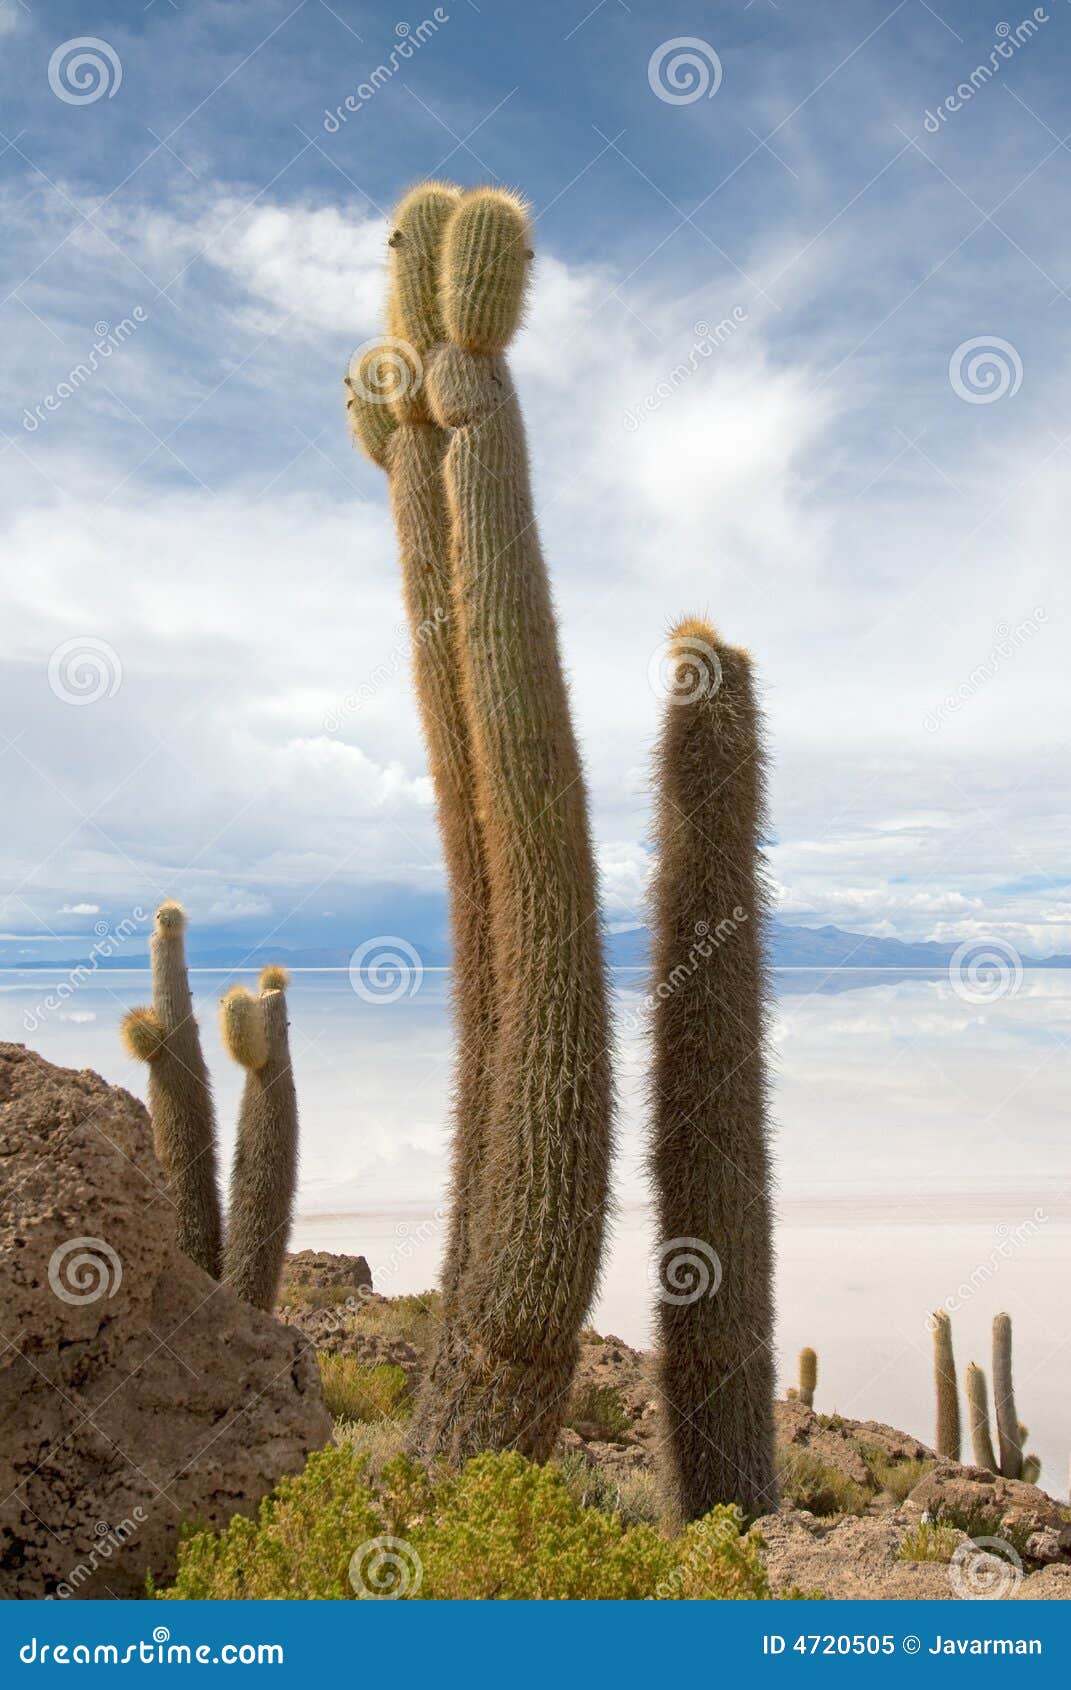 cardon cactus at isla de pescado